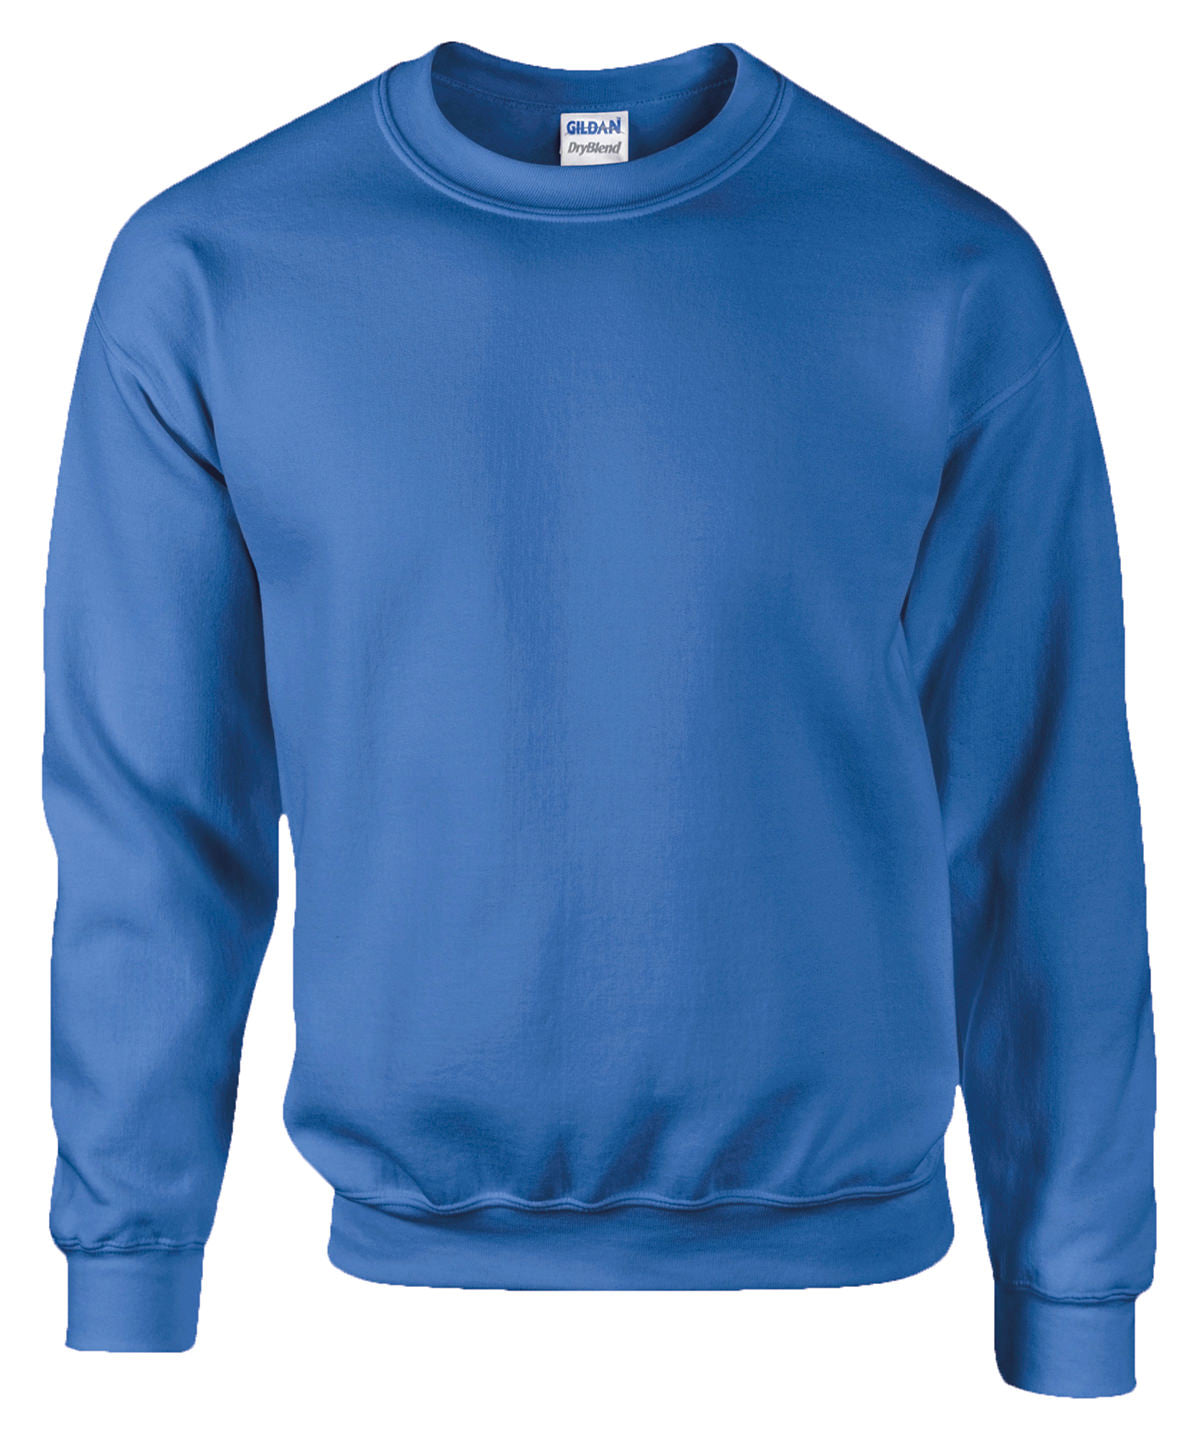 Háskólapeysur - DryBlend® Adult Crew Neck Sweatshirt